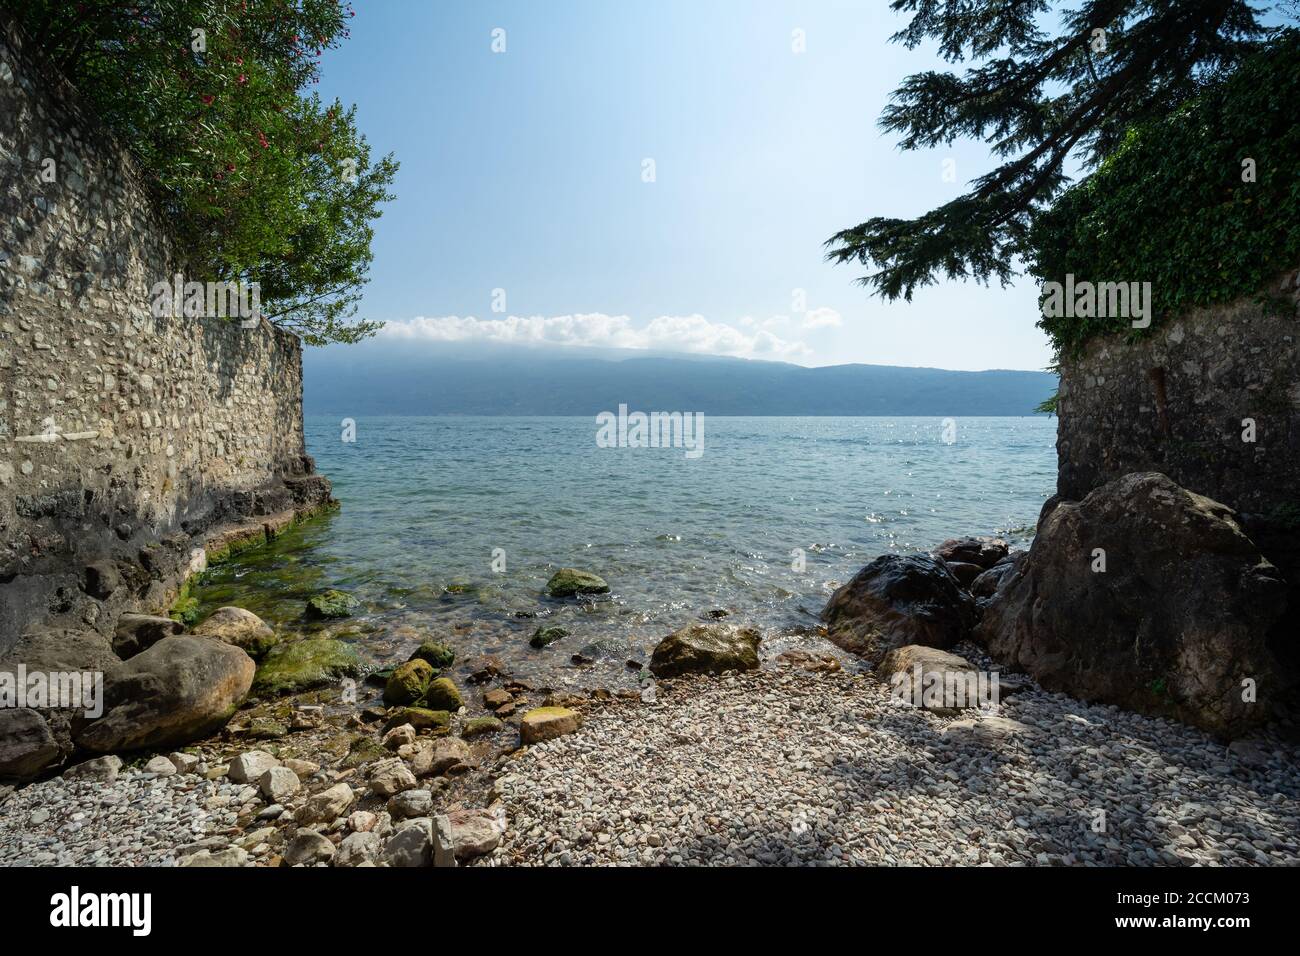 Petite plage sur le lac de Garde à Gargnano, Brescia, Italie, vue panoramique de la rive ouest vers le côté Vérone Banque D'Images